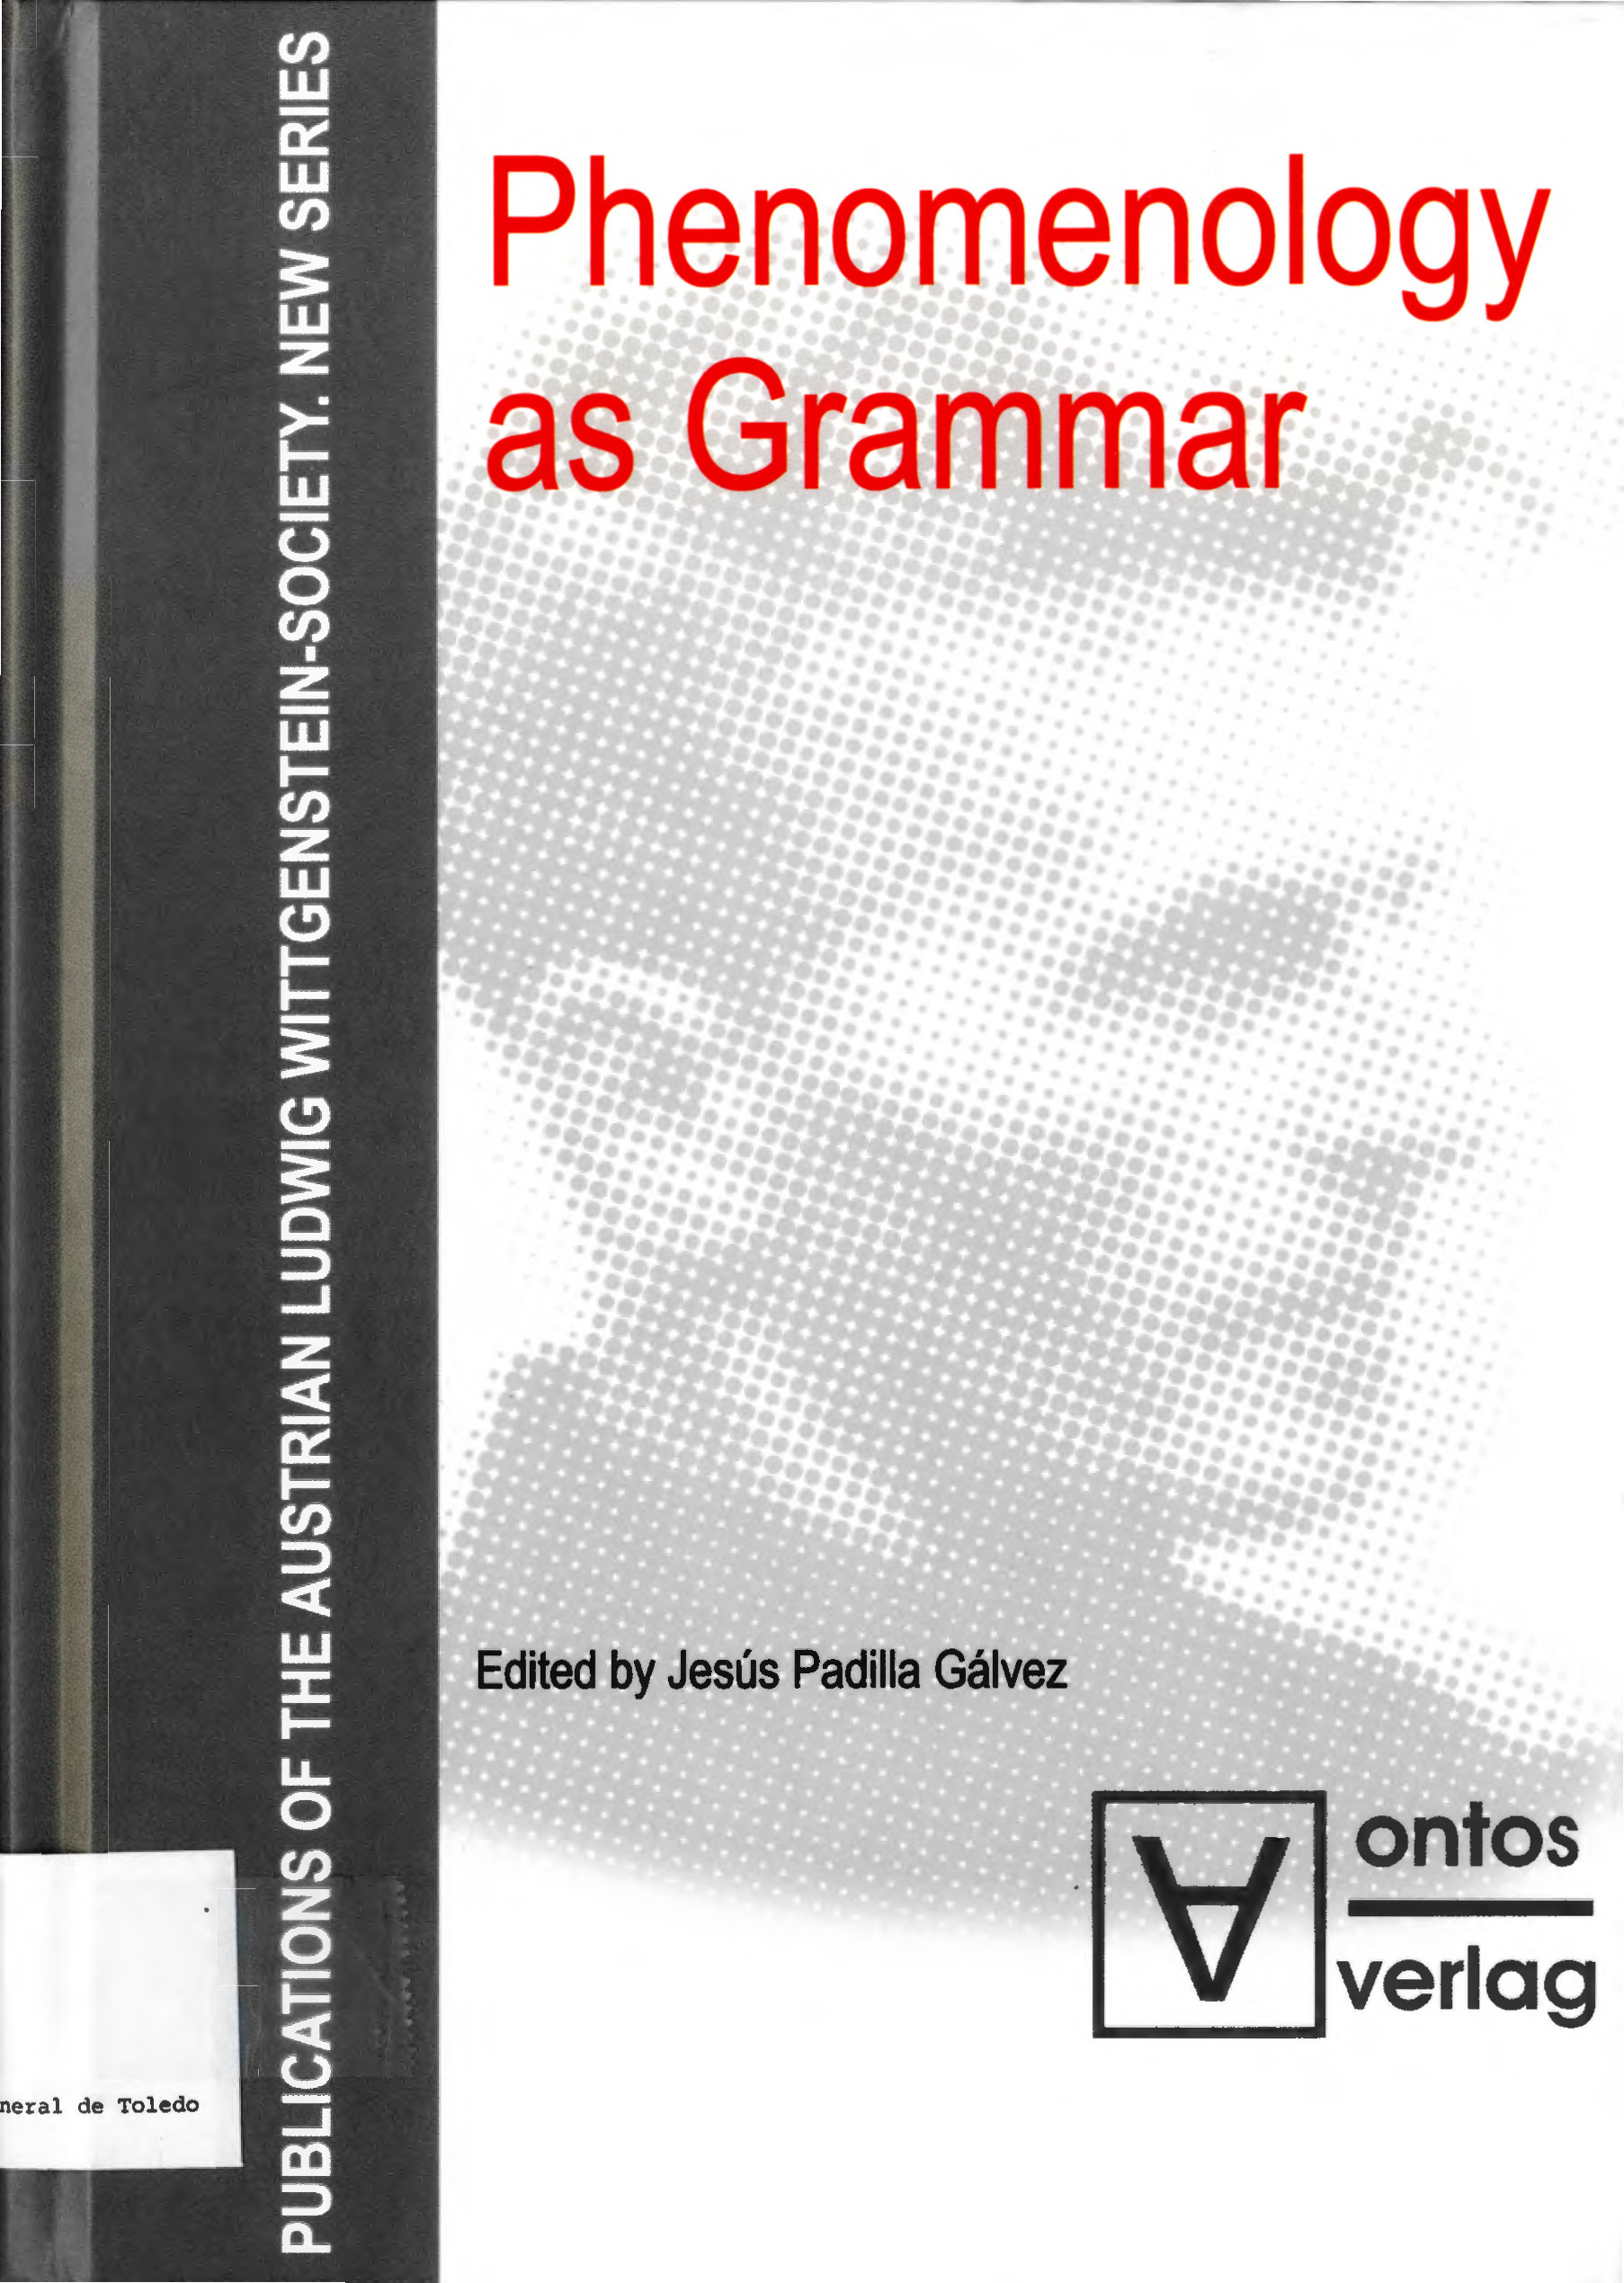 Imagen de portada del libro Phenomenology as grammar